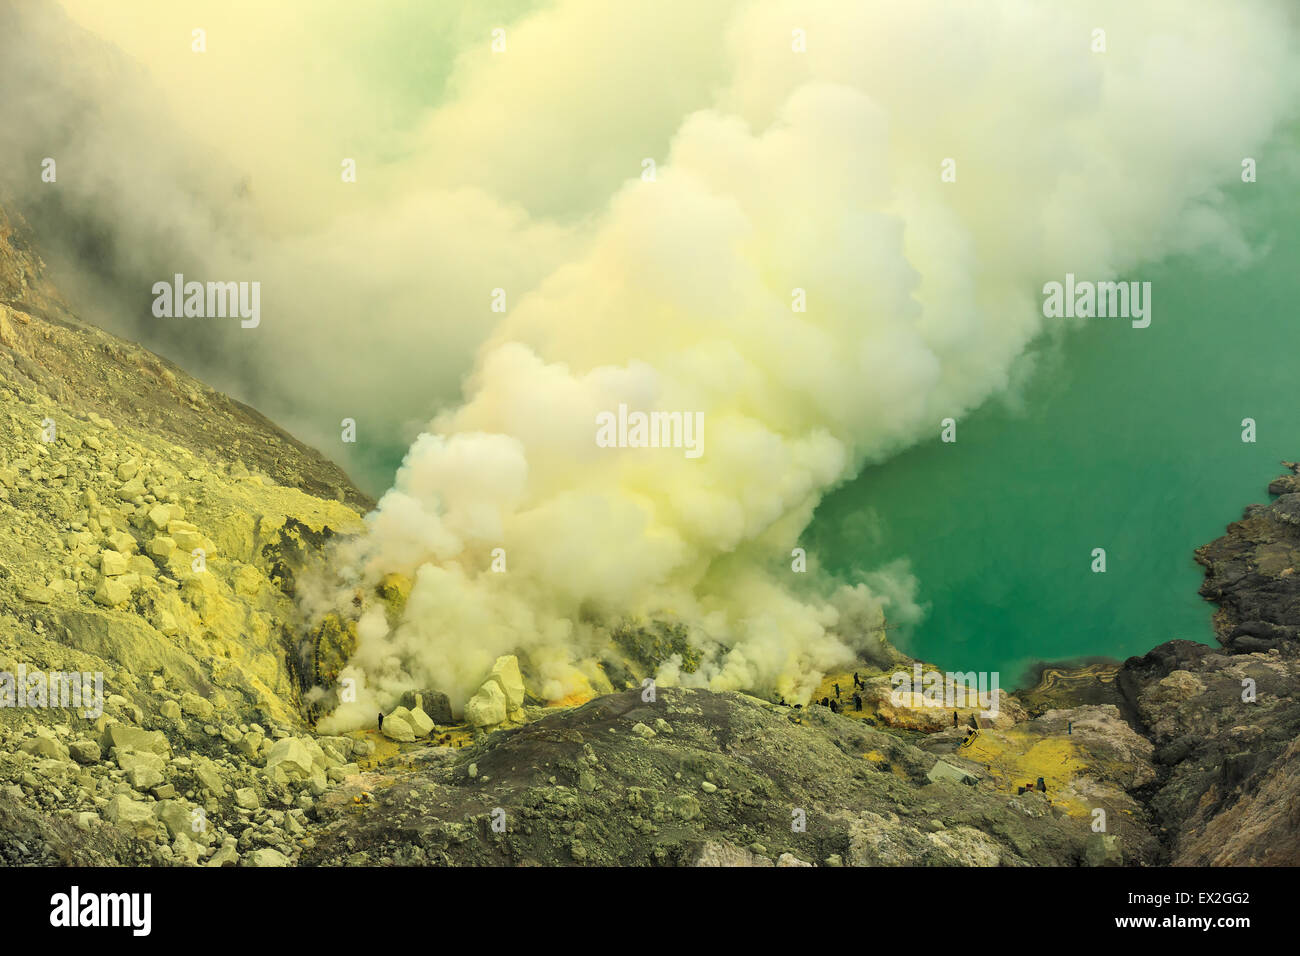 Kawah Ijen Crater Lake volcanique et toxiques des fumées de soufre Banque D'Images